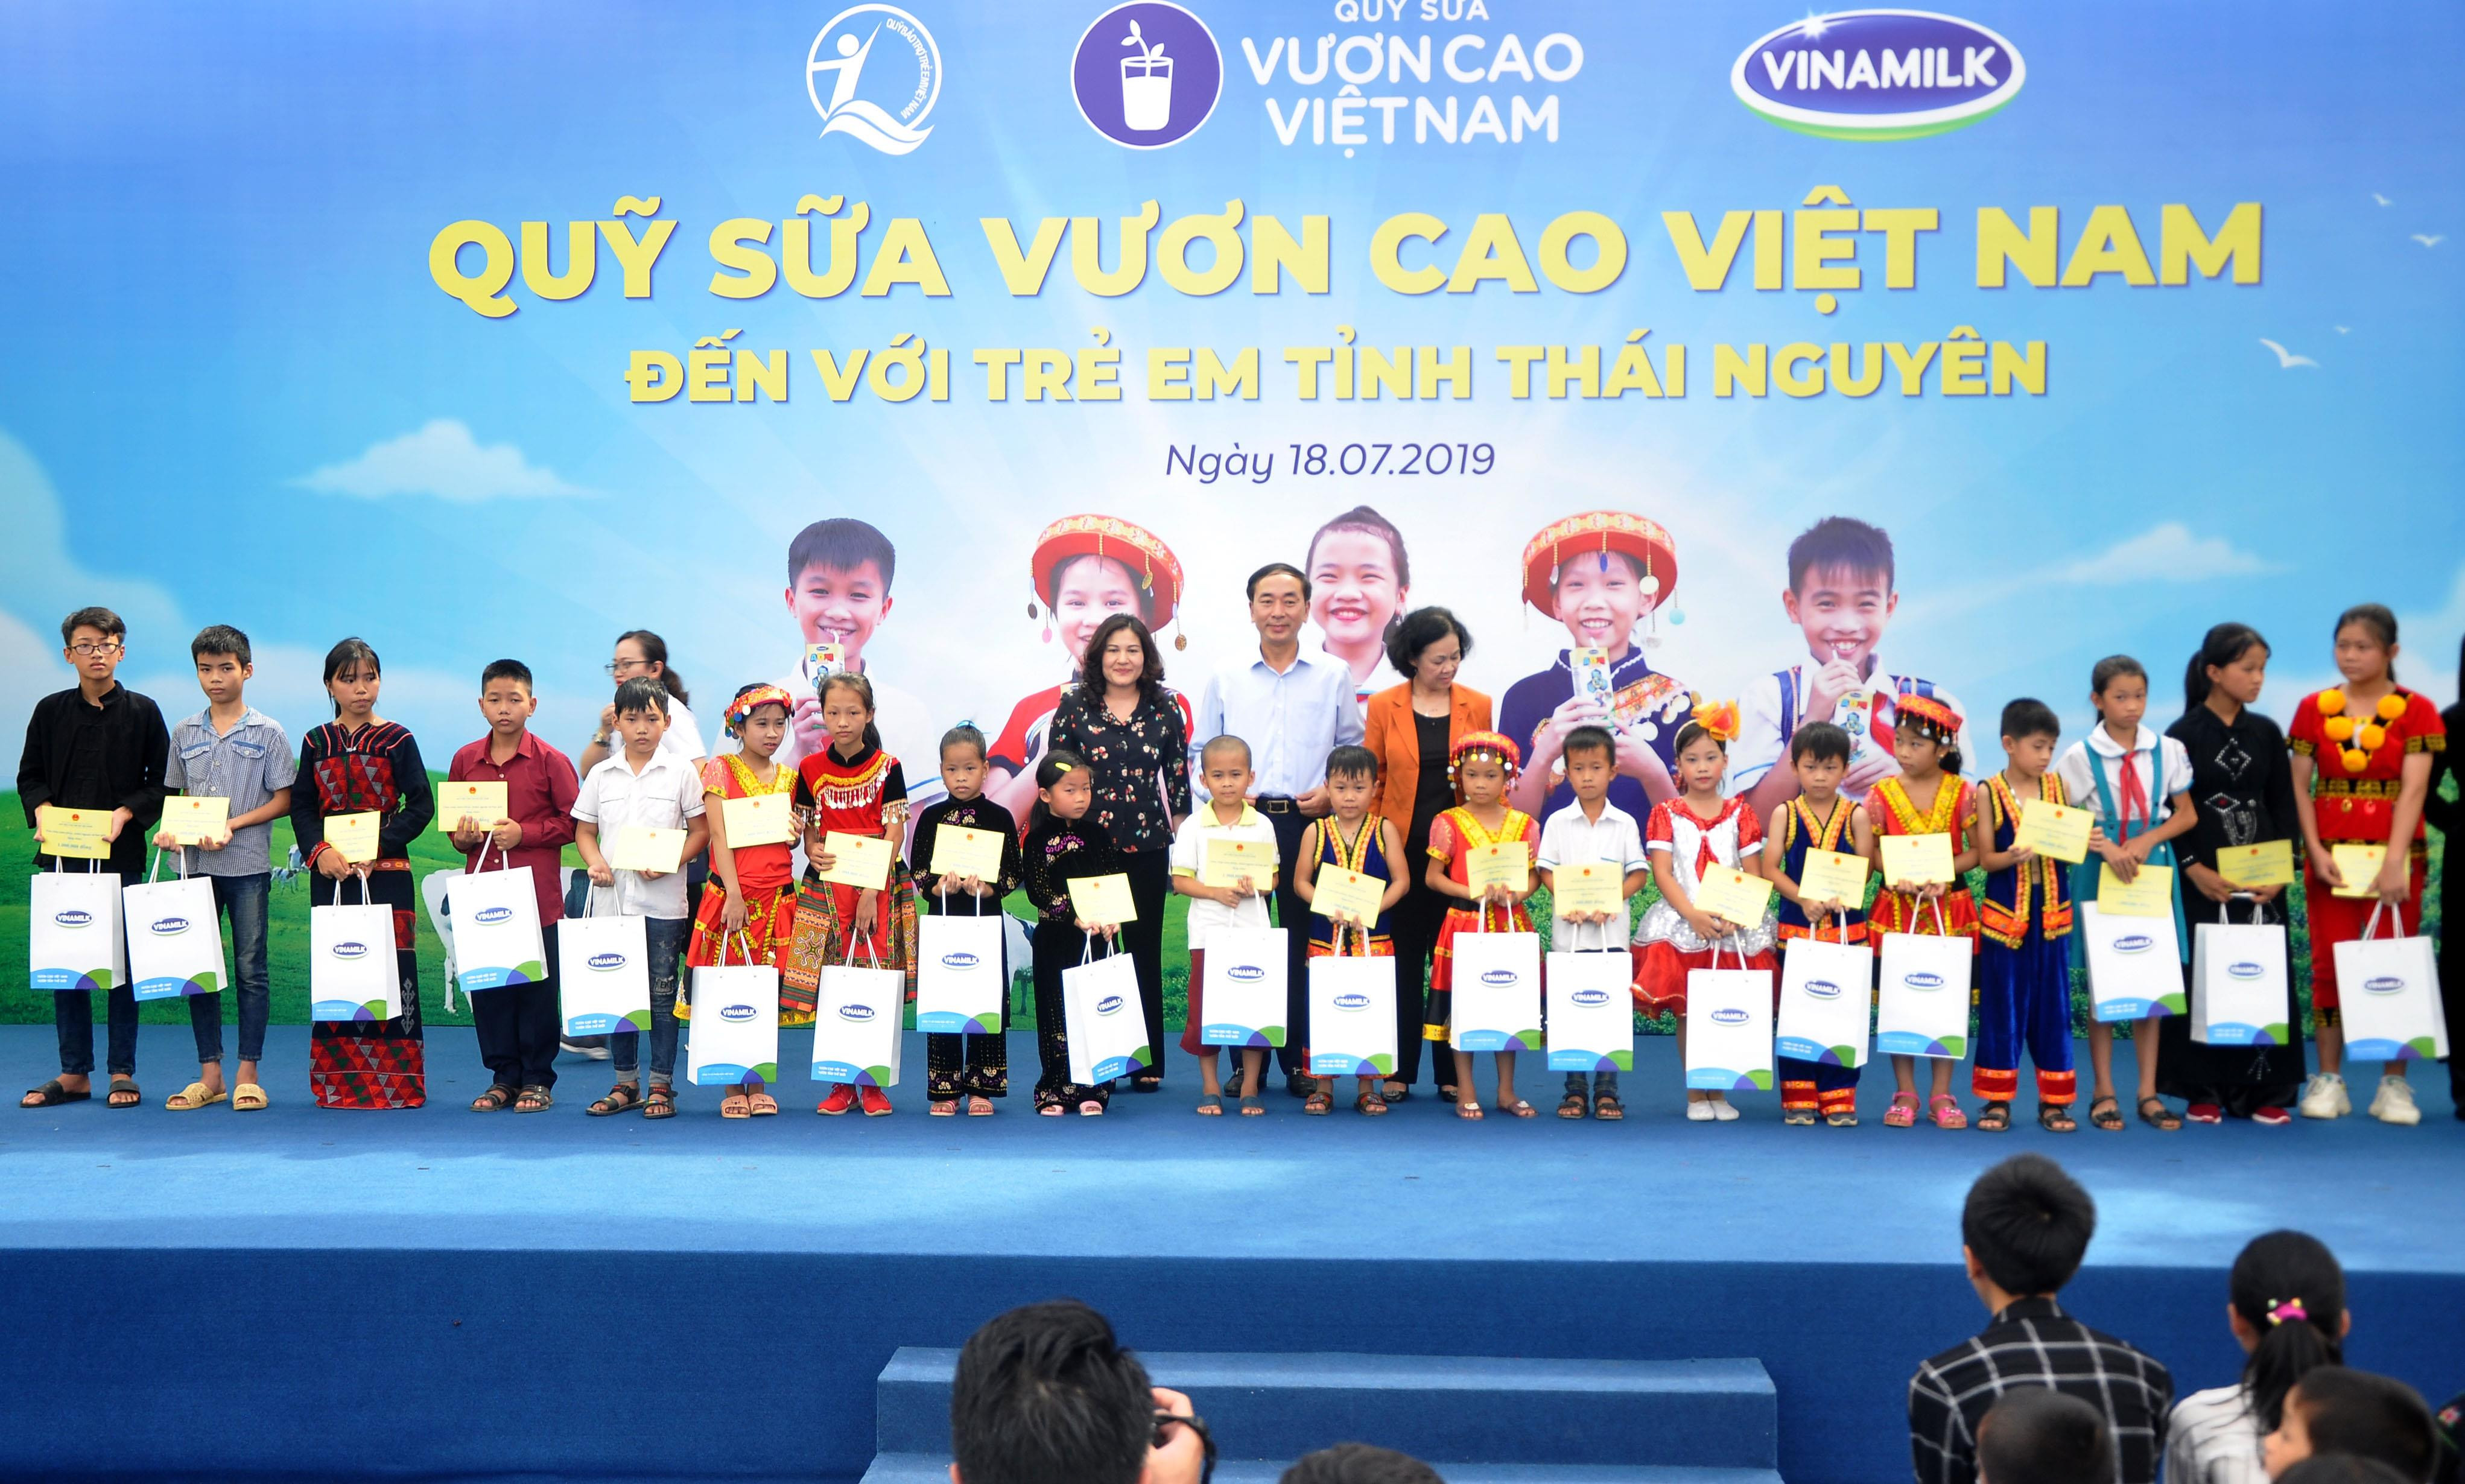 Bà Trương Thị Mai - Ủy viên Bộ Chính trị, Bí Thư Trung ương Đảng, Trưởng Ban Dân vận Trung ương và các đại biểu cùng đại diện Vinamilk trao quà cho các em học sinh có hoàn cảnh khó khăn.